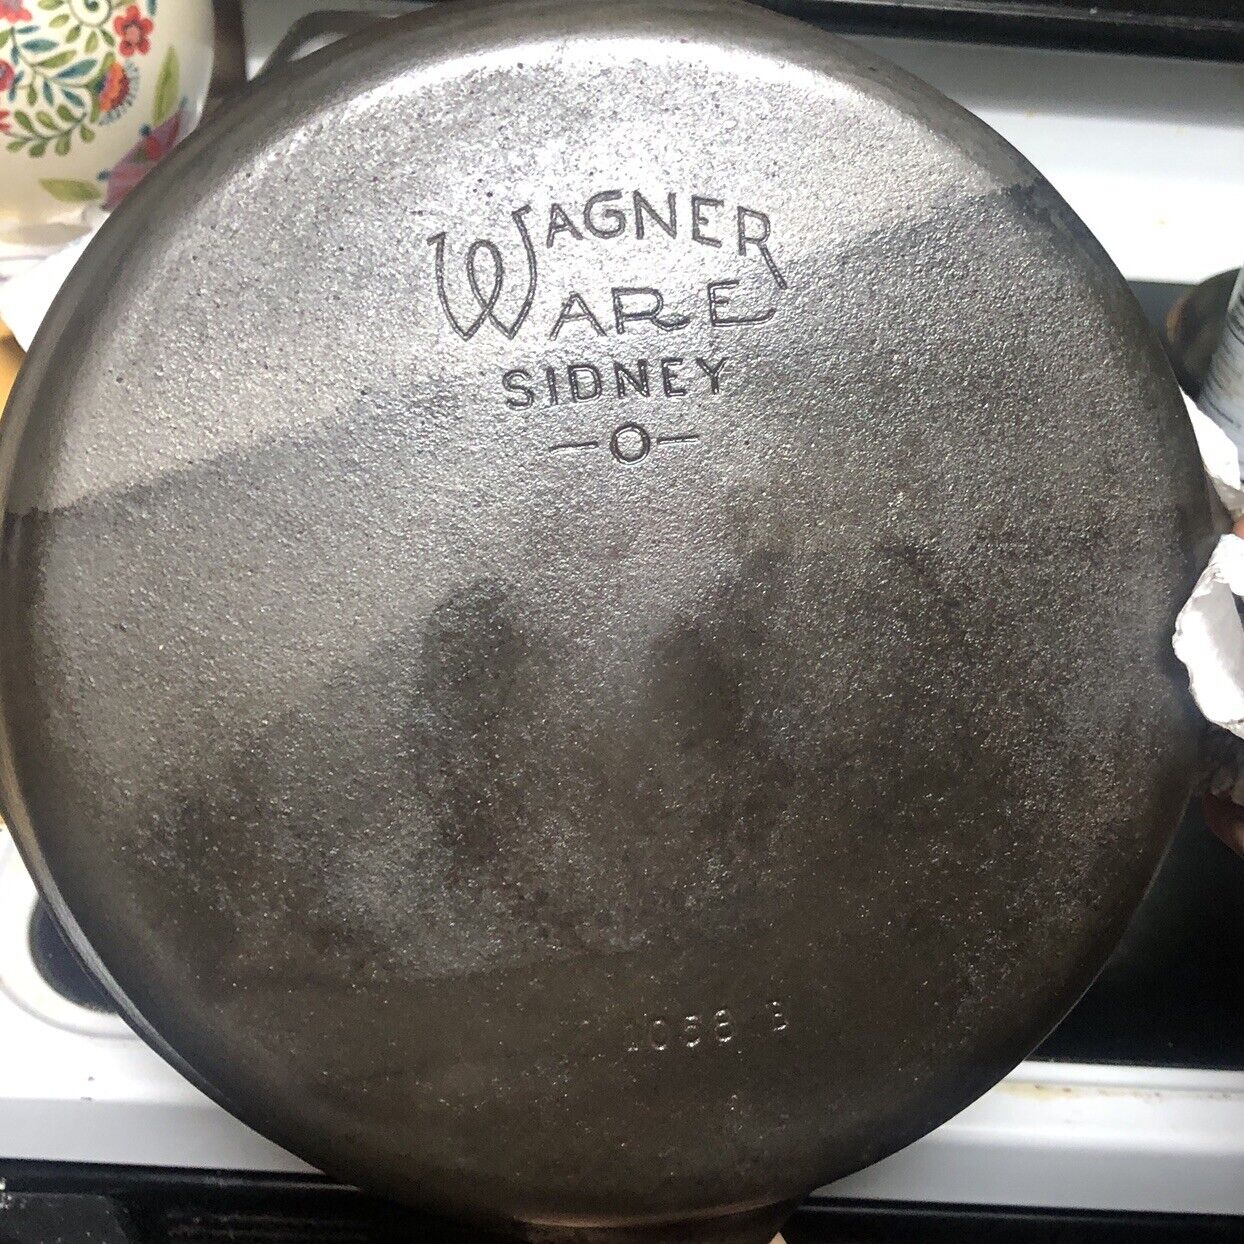 Vintage Cast Iron Skillet #8 Wagner Ware Sidney -0- 1058 B